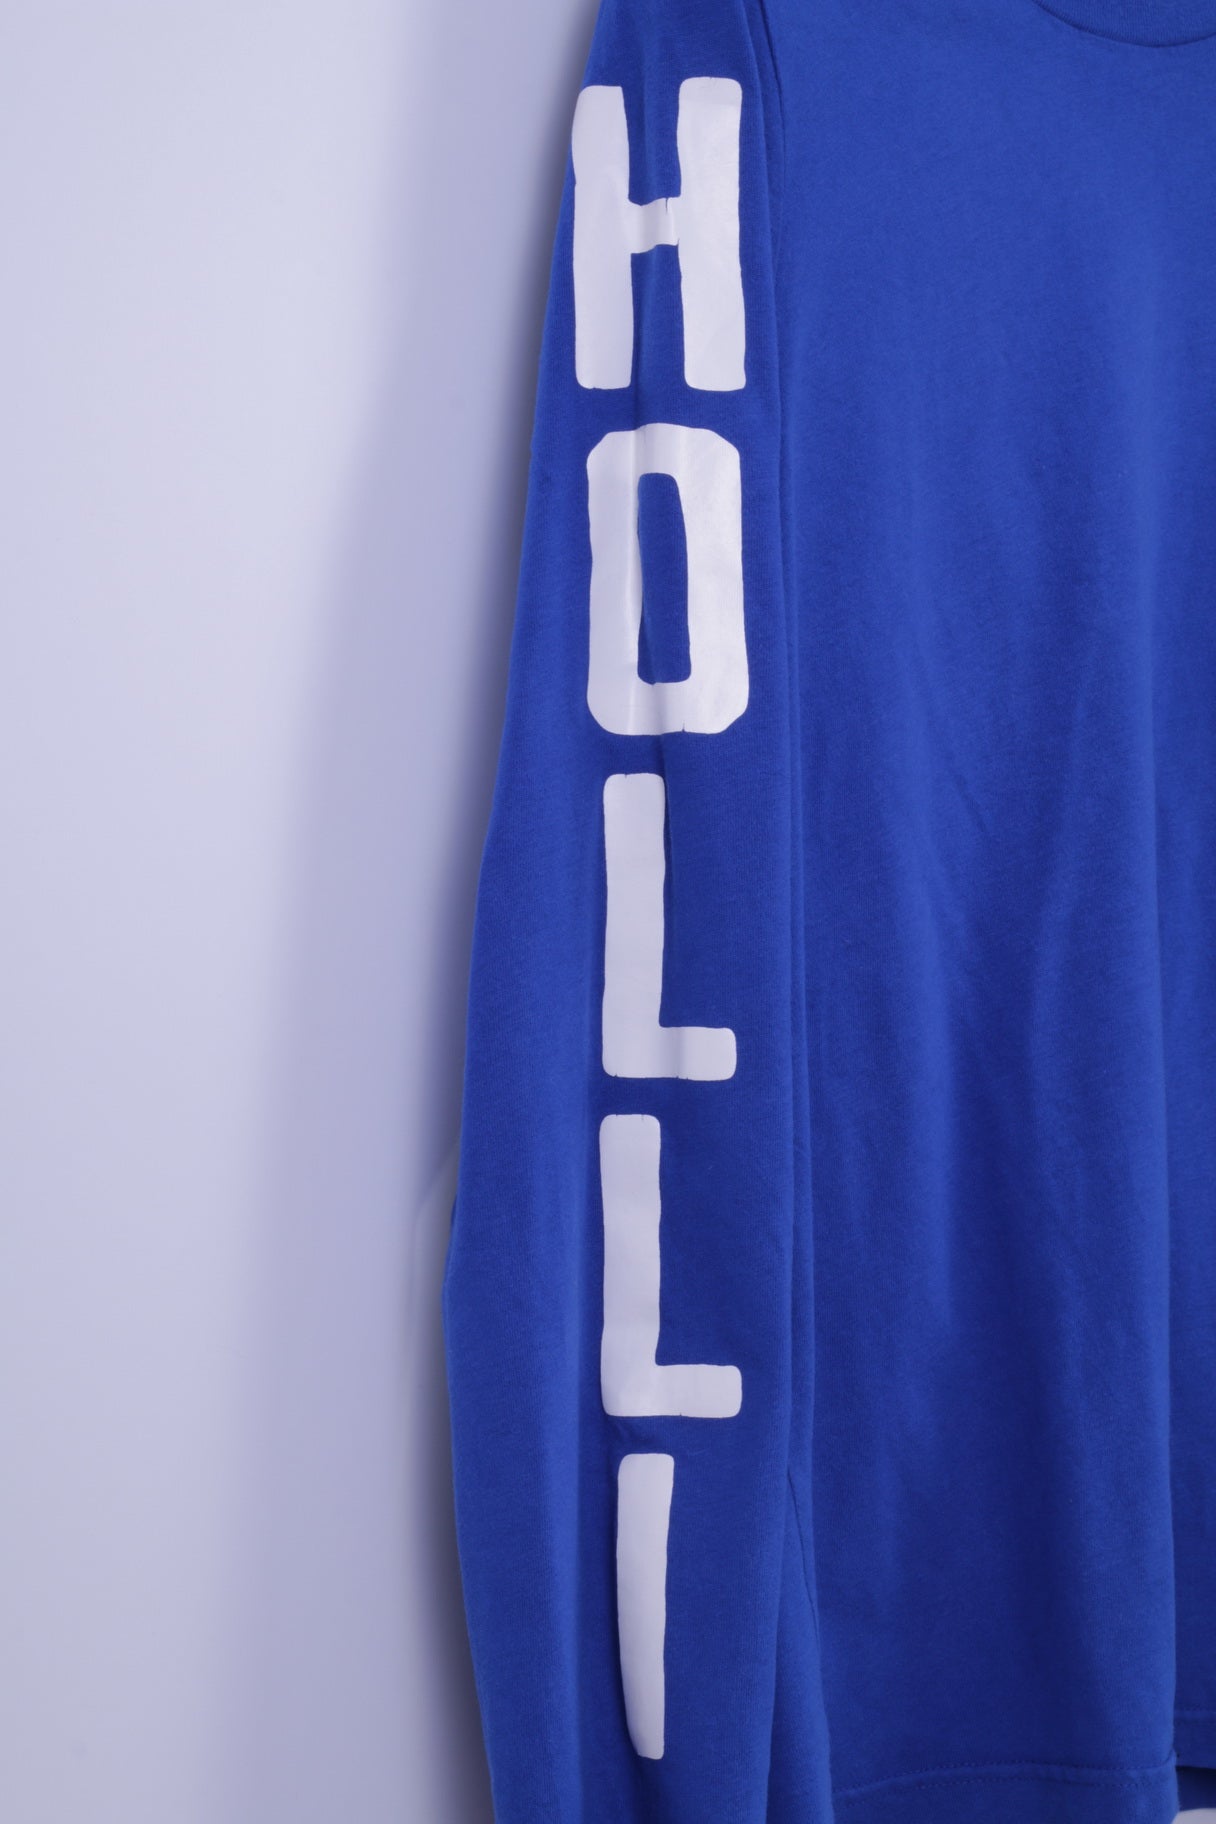 Hollister California Mens XL Long Sleeved Shirt Blue Cotton Stretch Henley Top